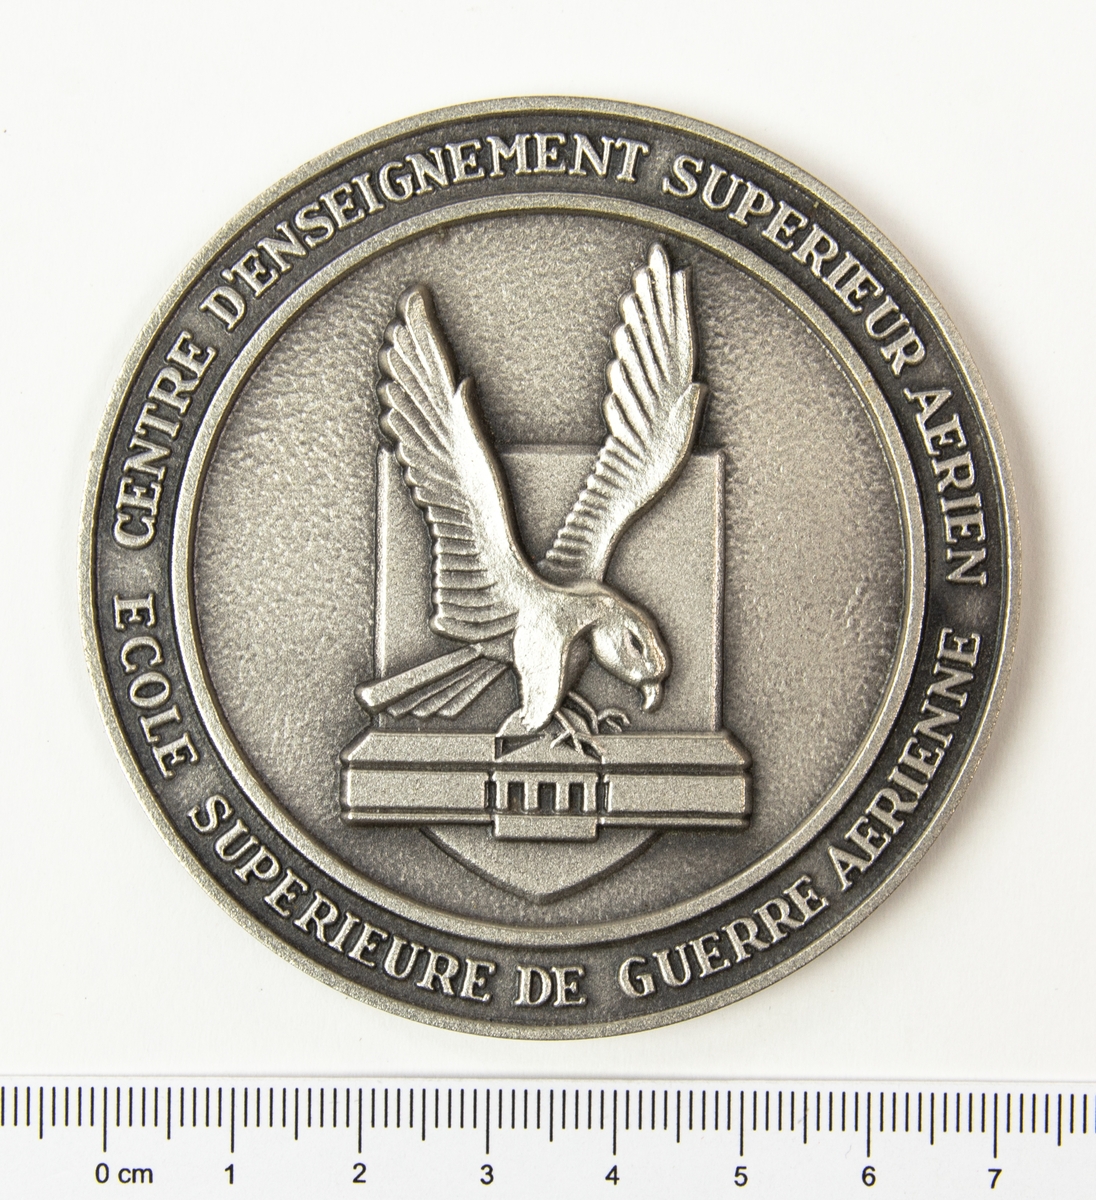 Rund medalj men en relief av en örn och ett hus och texten "Centre d'enseignement superieur aerien ecole supérieure de guerre aerienne" runt kanten. Medaljen förvaras i en ask.